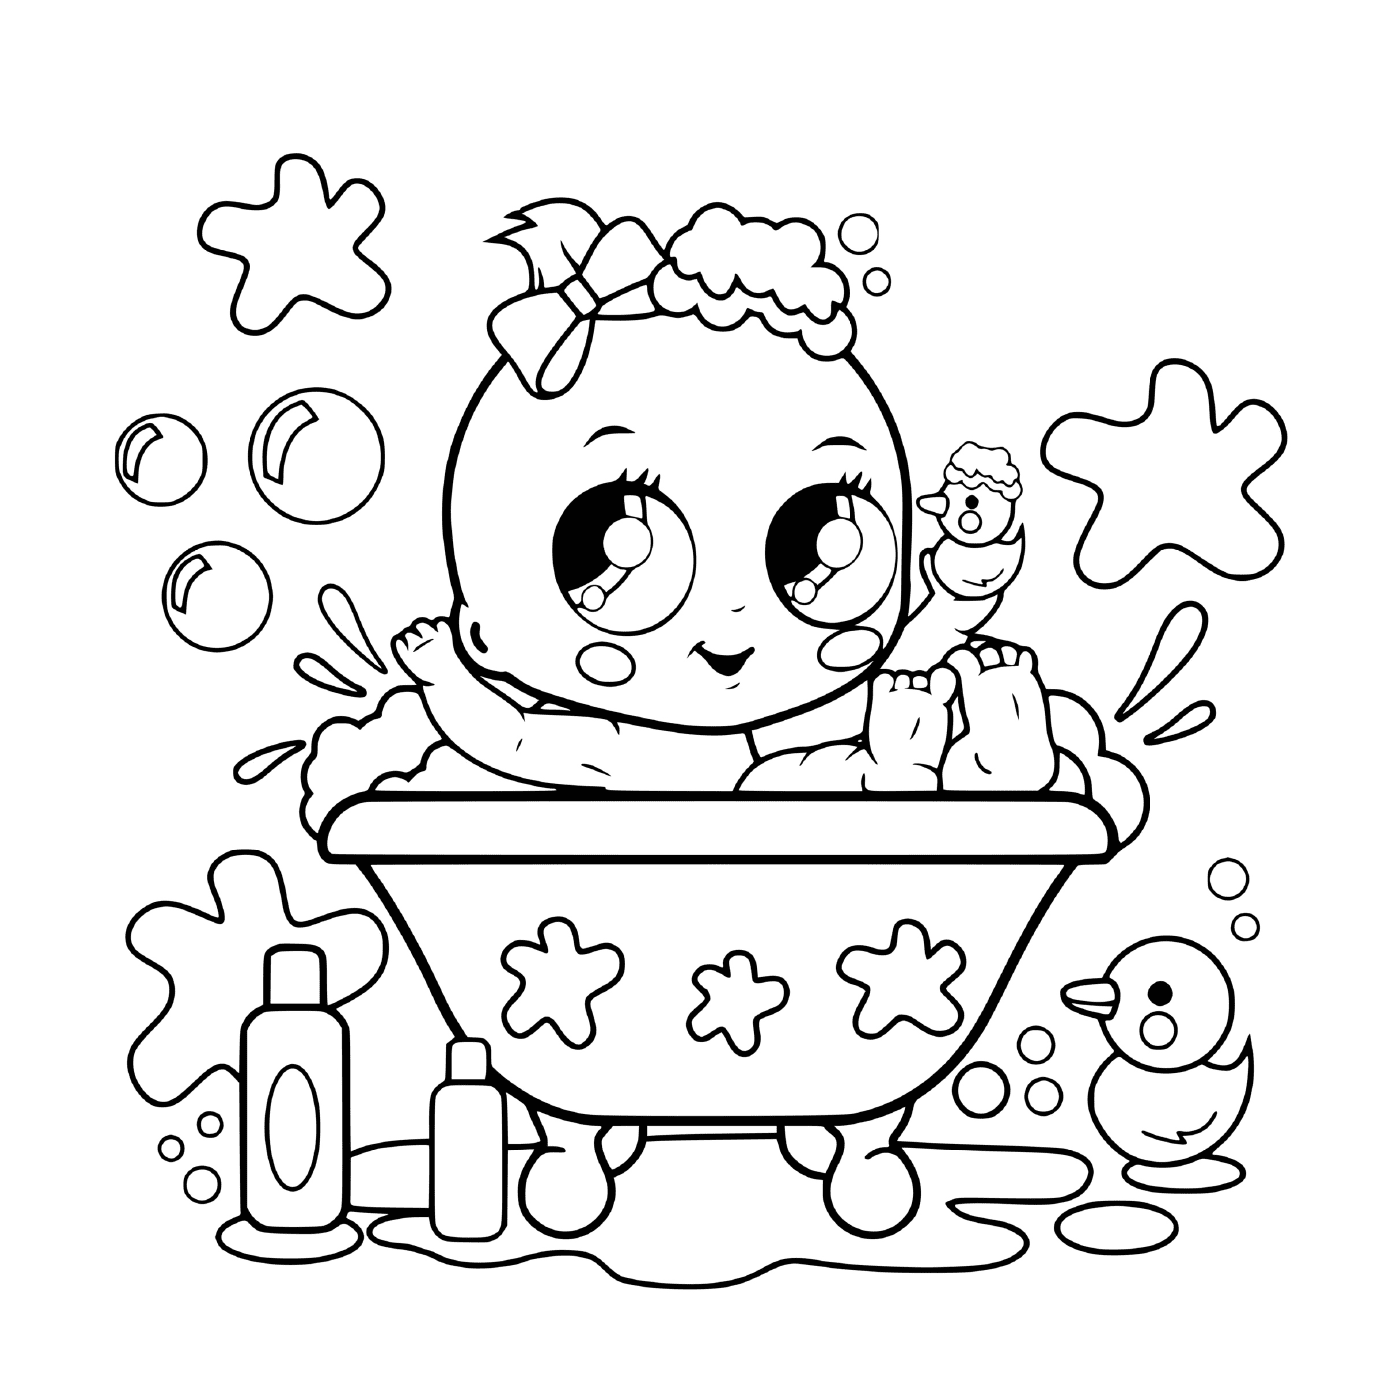  Un bambino in una vasca da bagno 